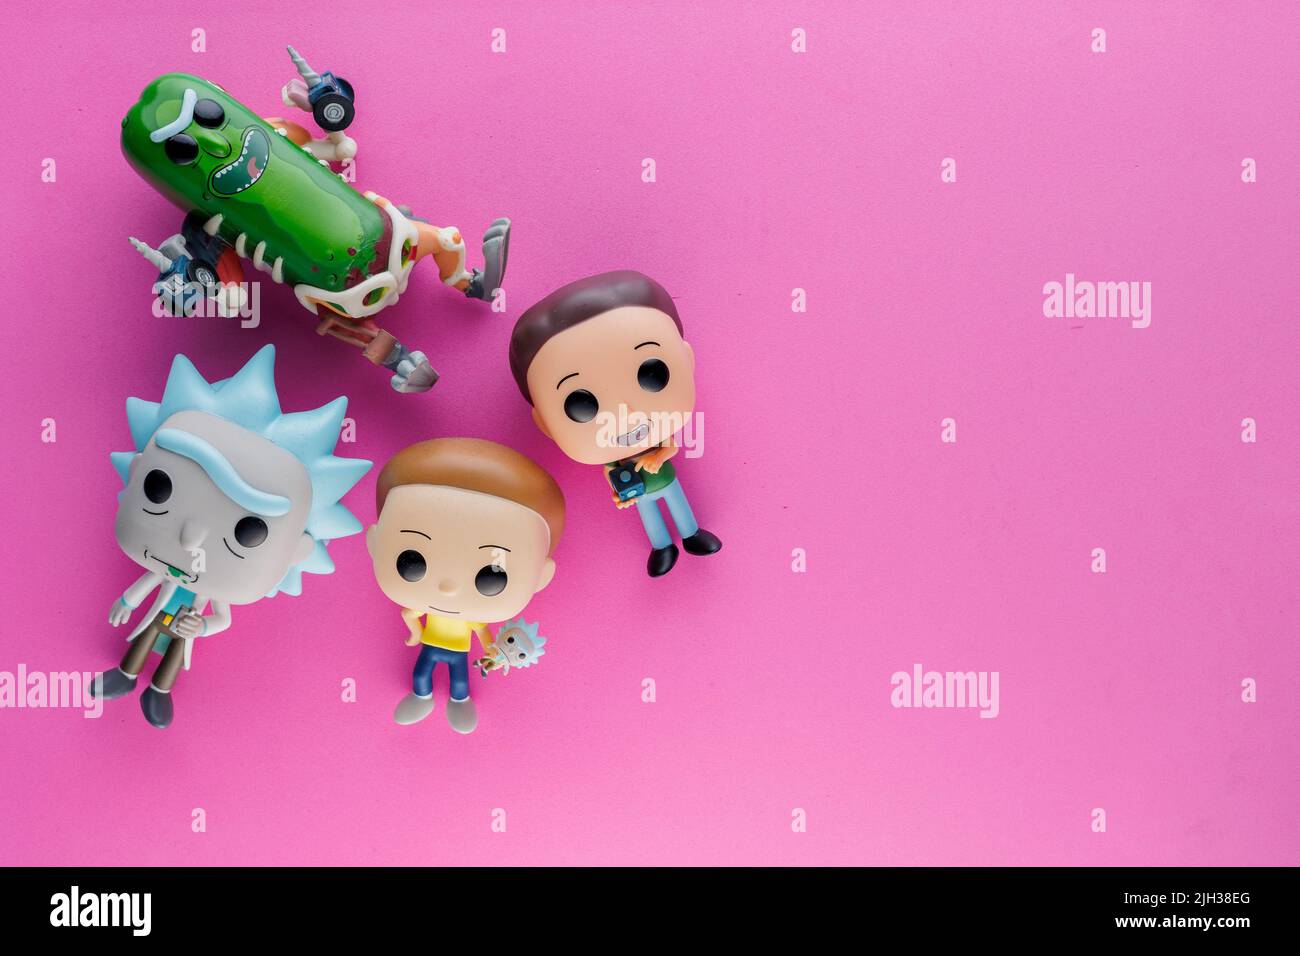 Rick und Morty Funko Pop Figuren auf einem rosa flachen Hintergrund Stockfoto